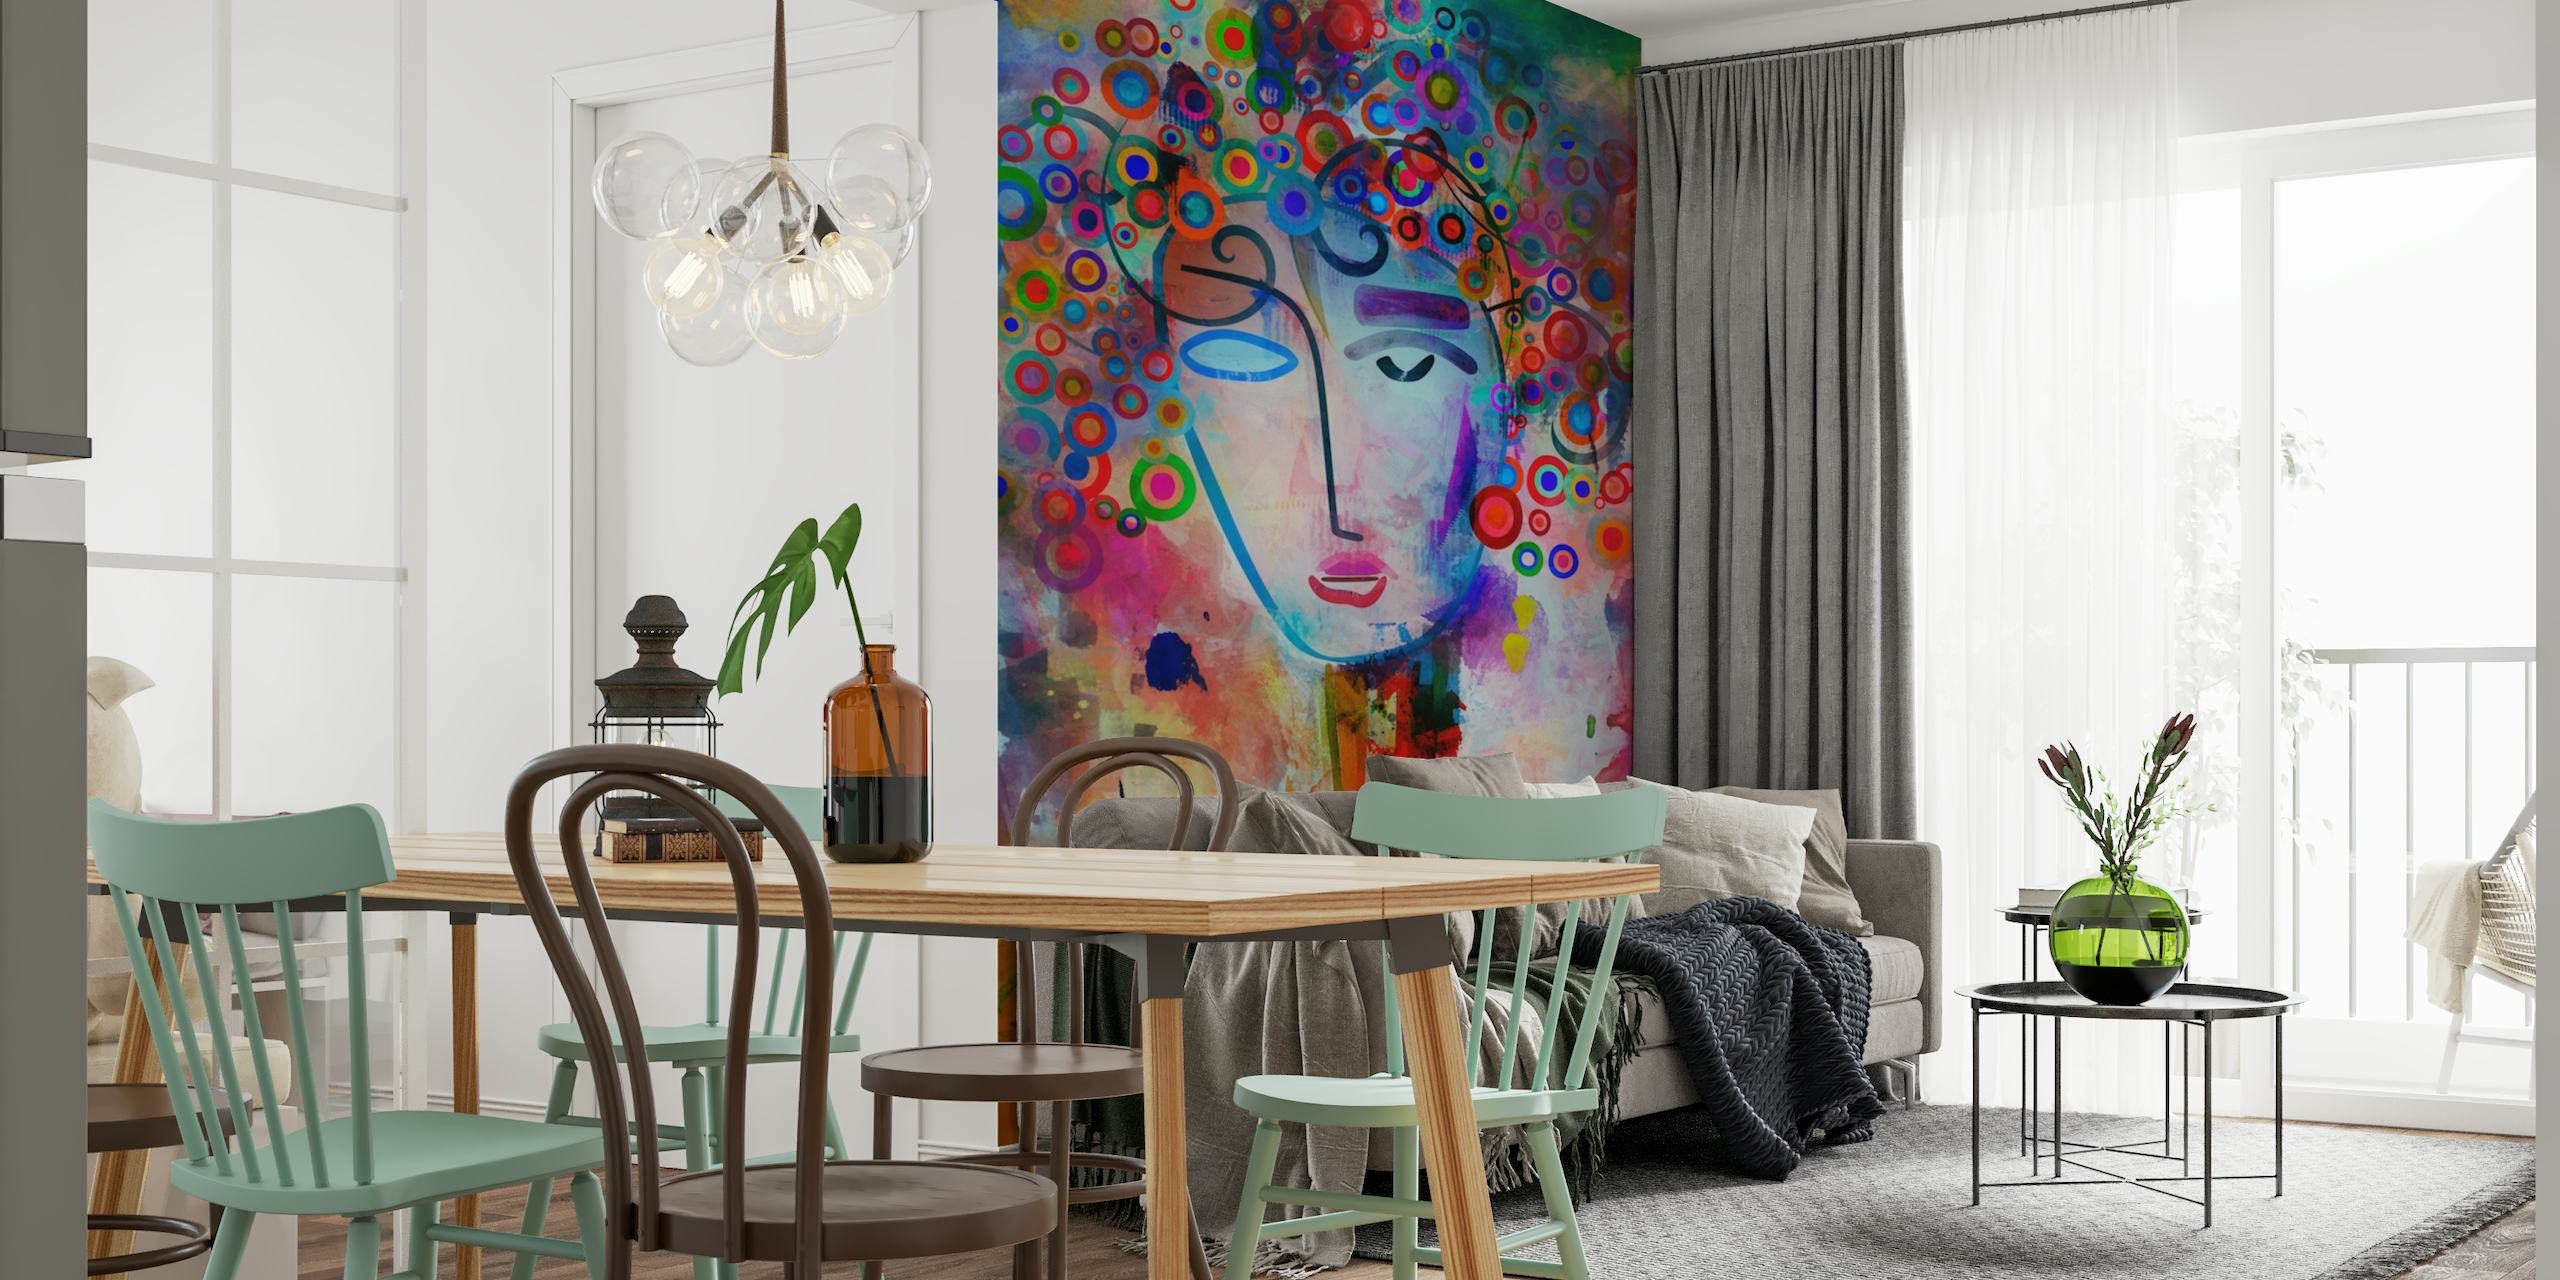 Mural abstracto y colorido que presenta una representación imaginativa de una mente en una sesión de lluvia de ideas.